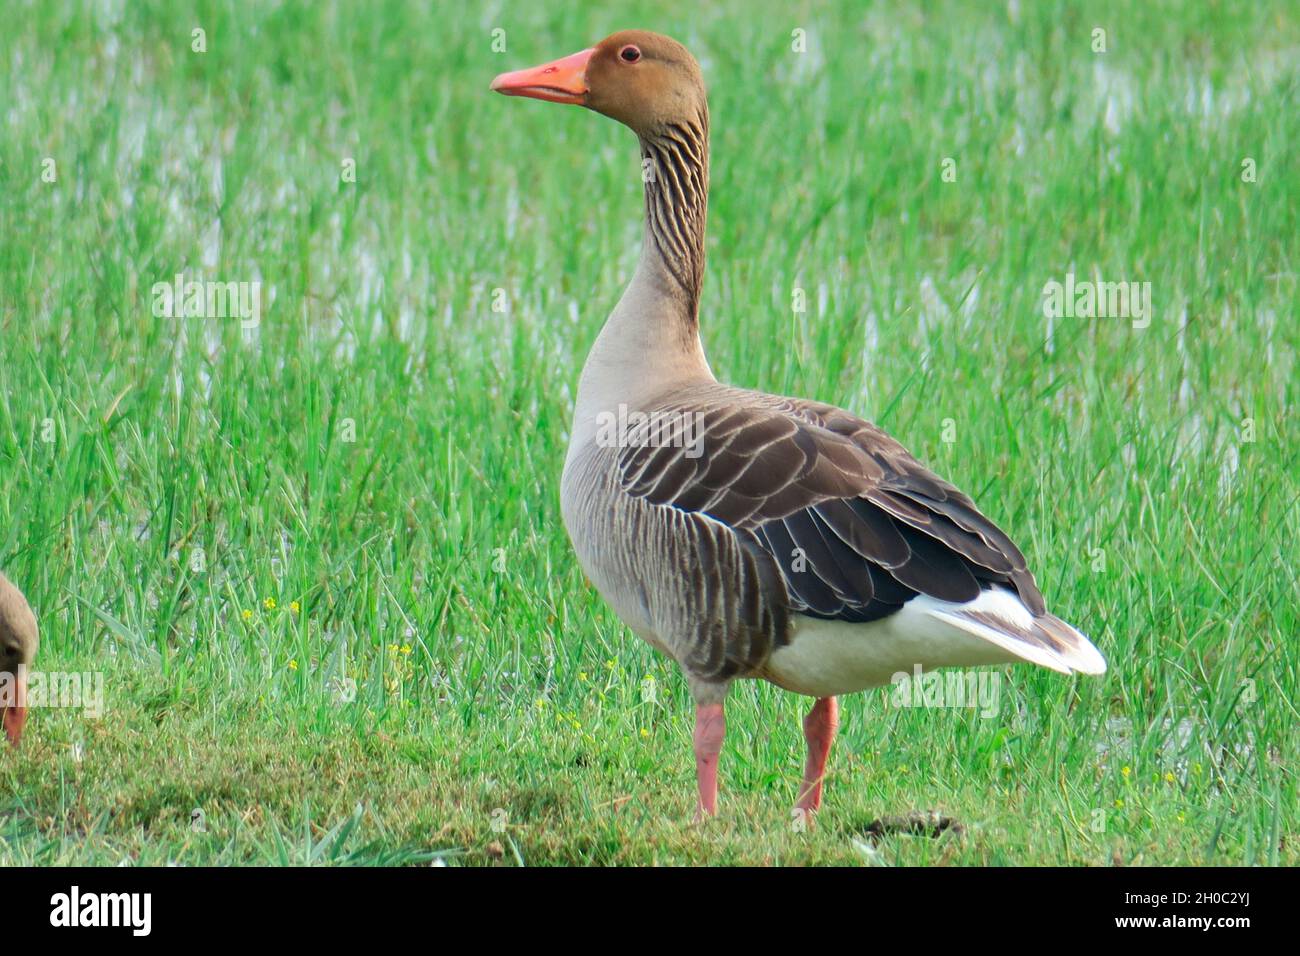 Greylag goose (Anser anser) in the grass, Europe Stock Photo